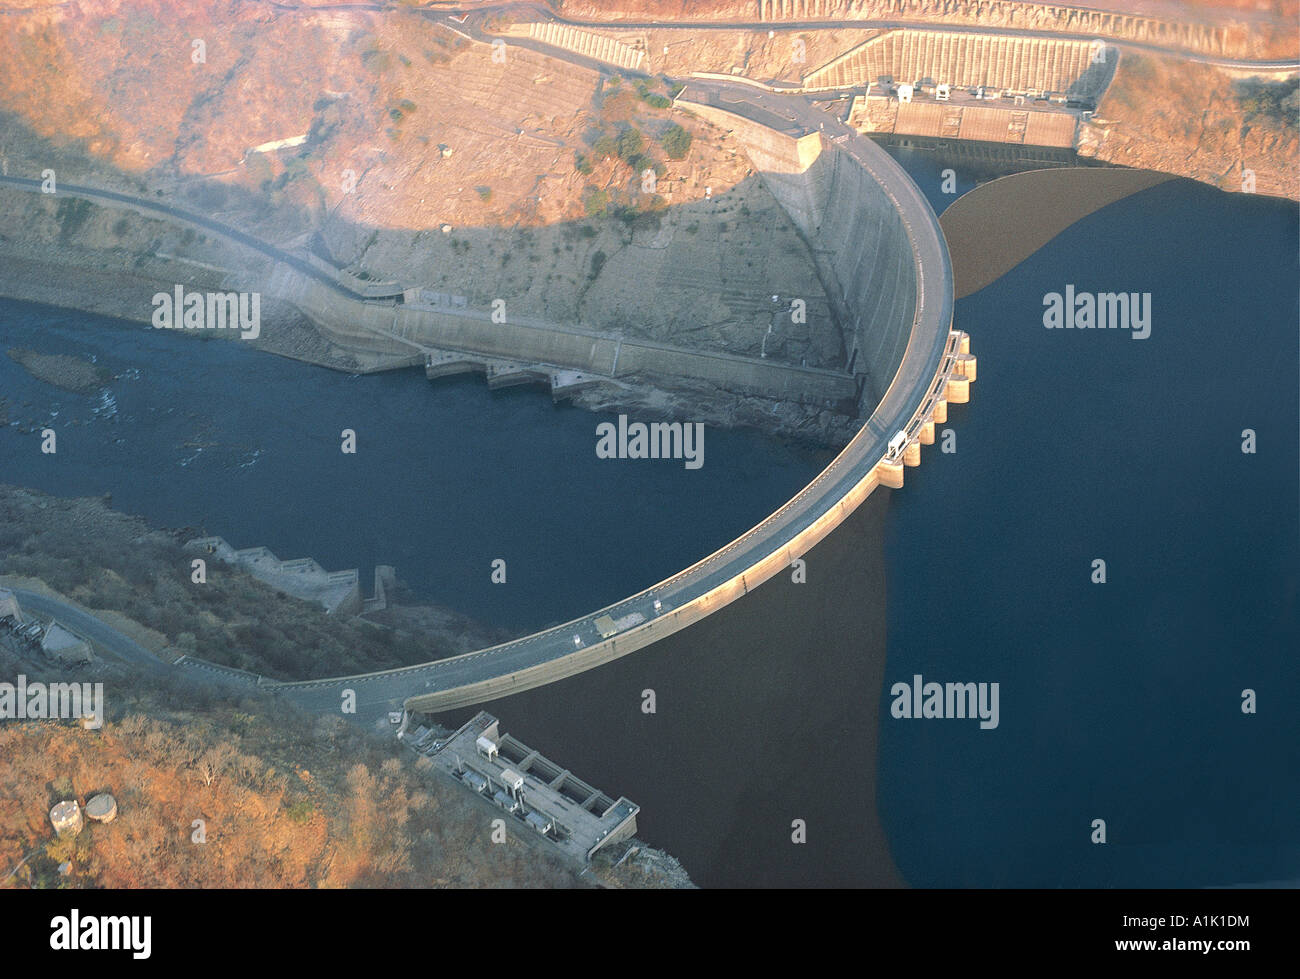 Aerial view of Kariba dam wall in Zimbabwe Stock Photo